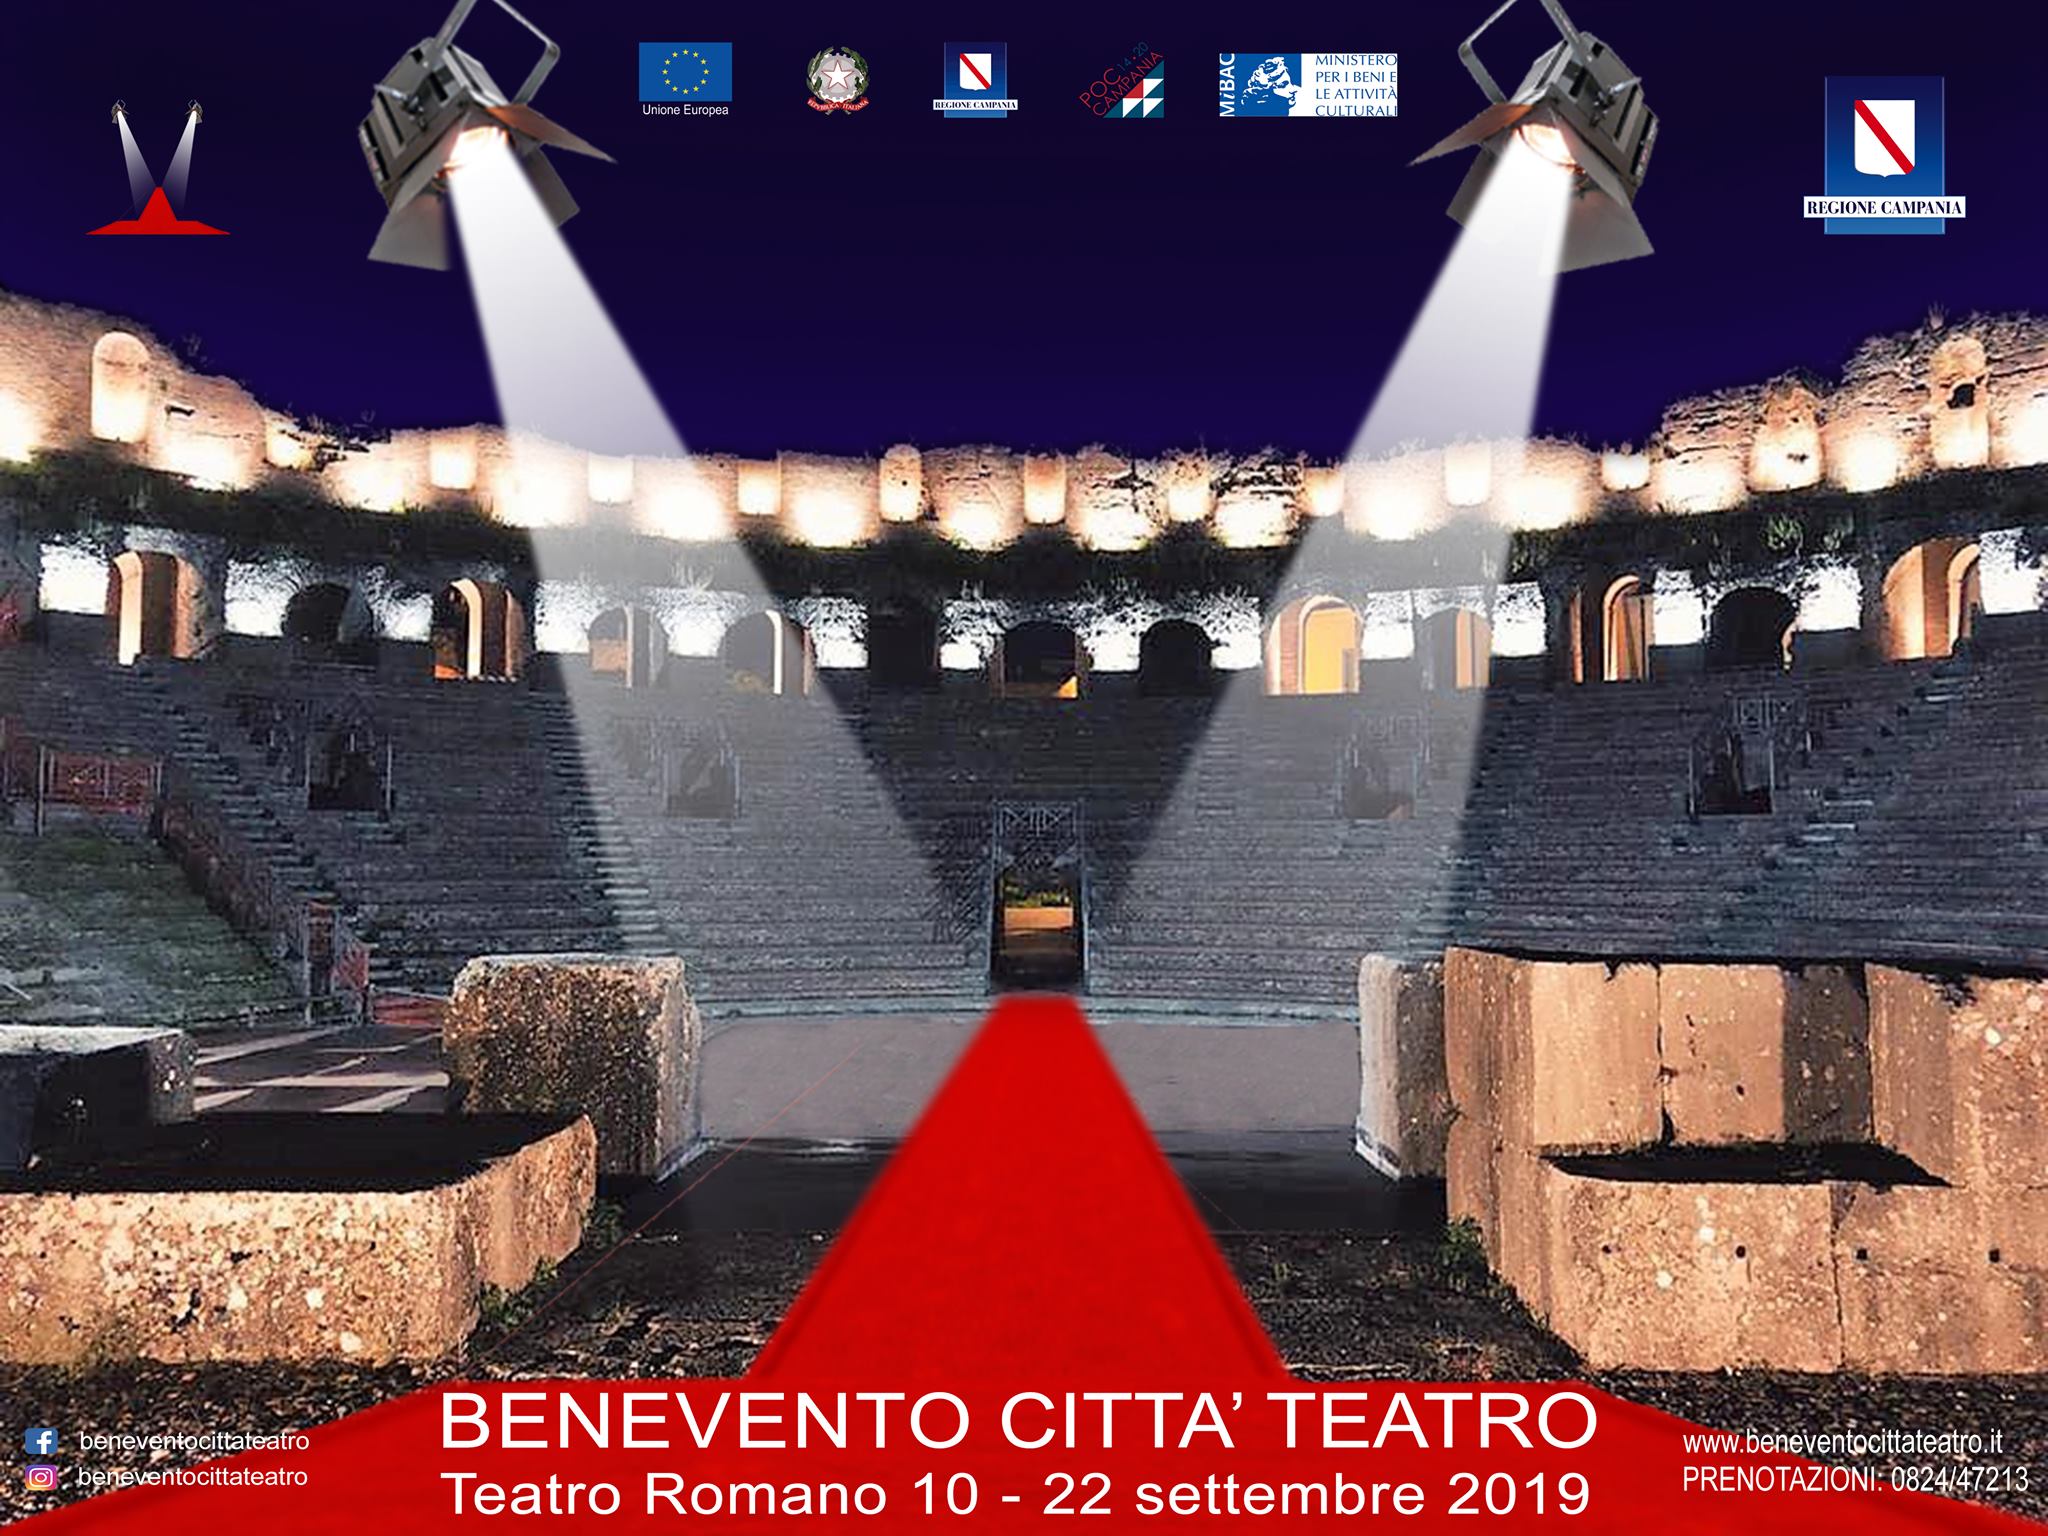 Benevento Città Teatro, lunedì 9 settembre la conferenza stampa di presentazione.